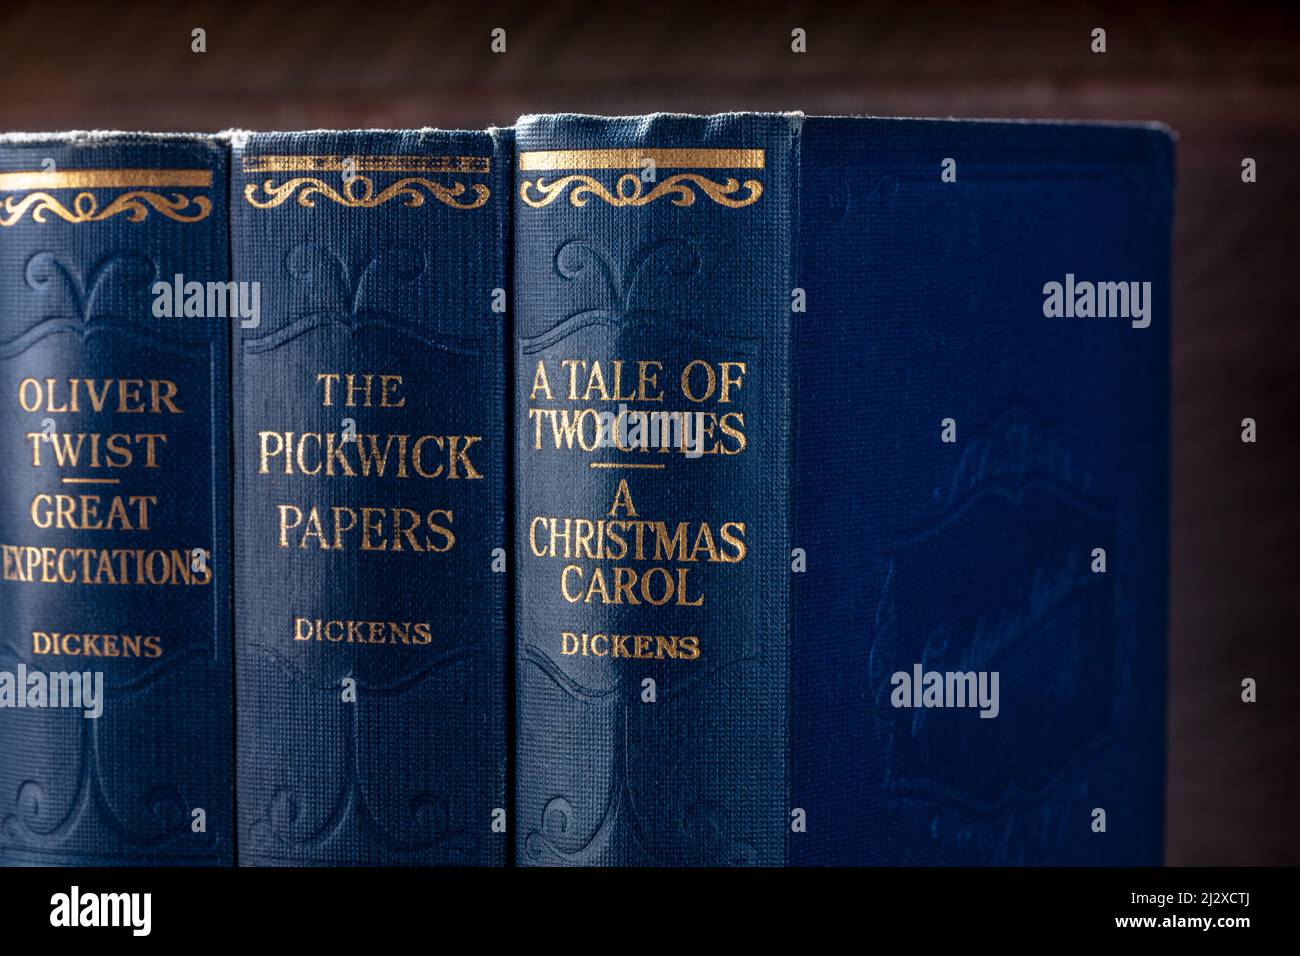 Madrid, Spagna - 11 agosto 2021: Le opere complete di Charles Dickens, tra cui Un Carol di Natale, i Pickwick Papers, e Oliver Twist, su scaffale Foto Stock